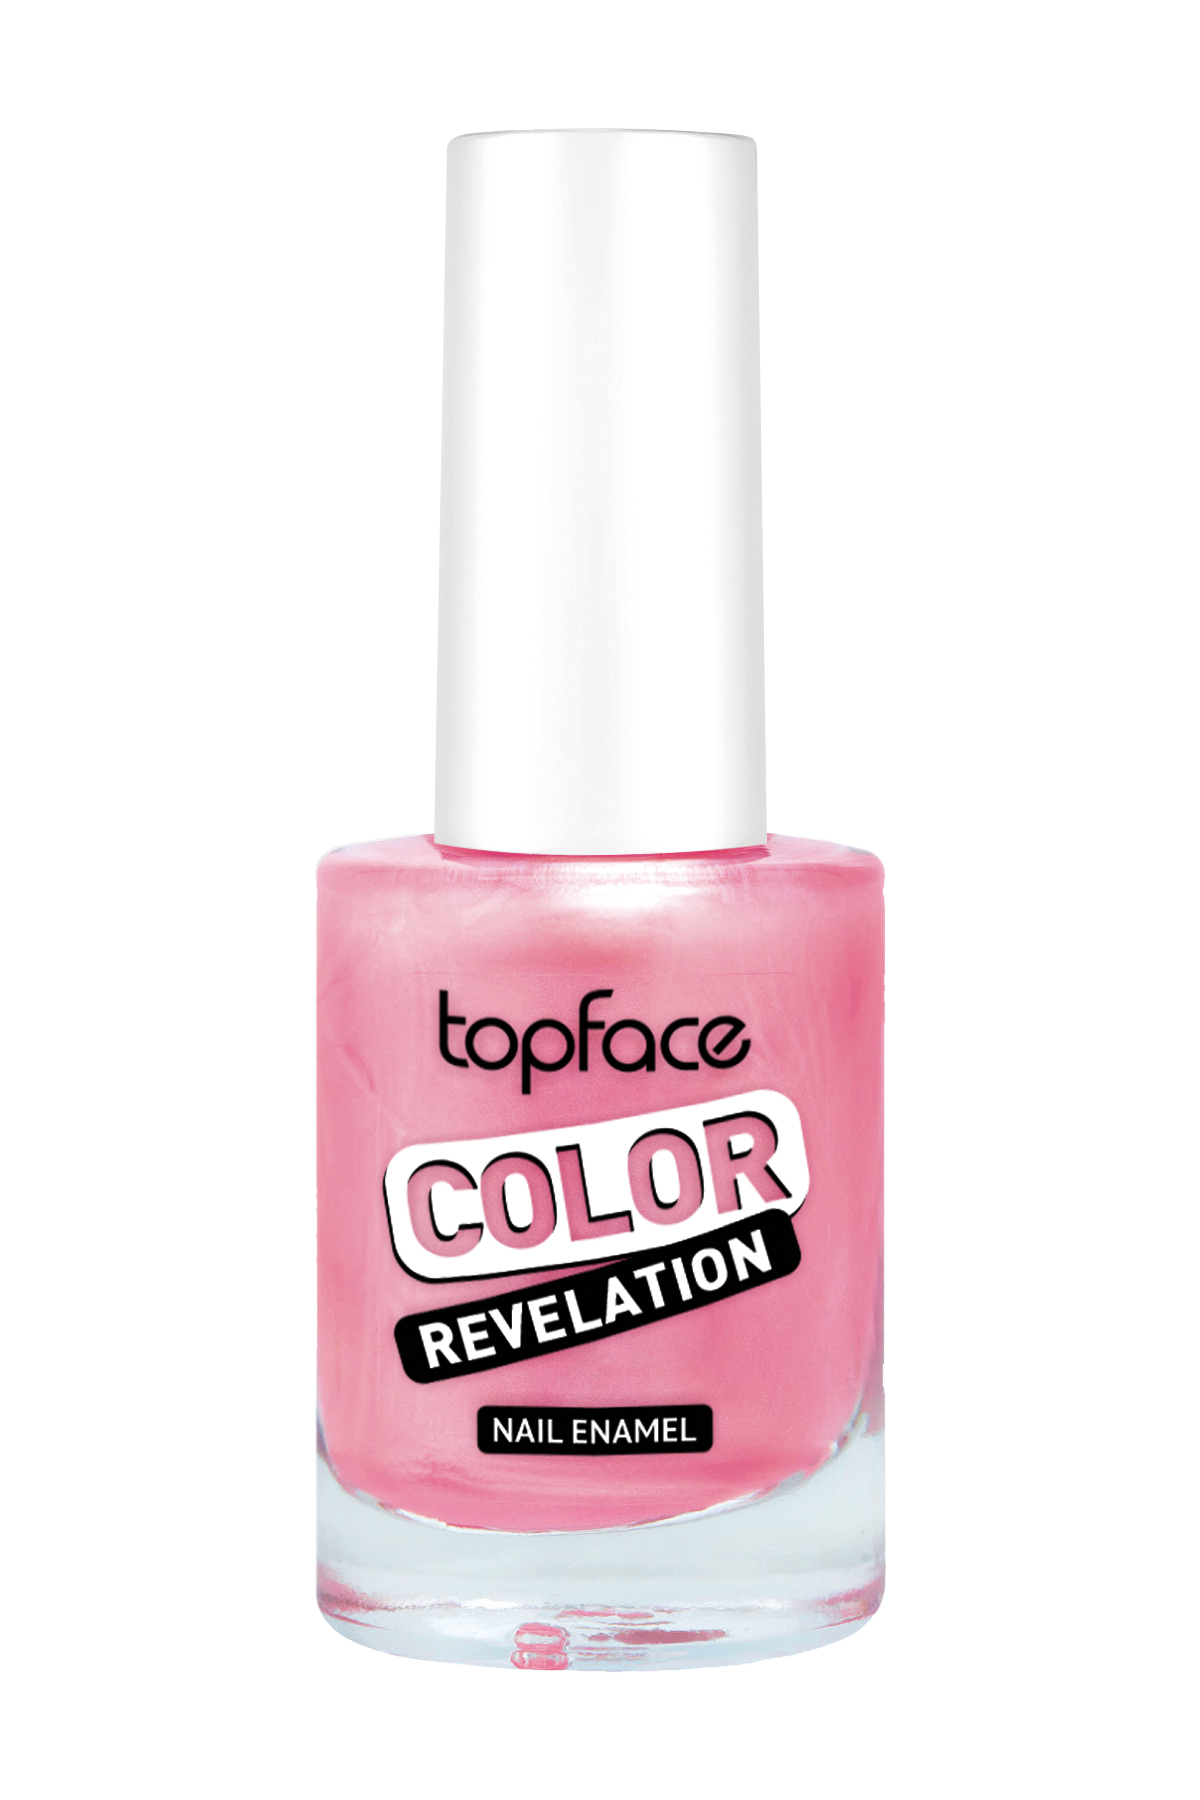 Топфейс косметика. Topface pt105 лак для ногтей "Color Revelation"(9мл)- 062. Topface лак д\ногтей “lasting Color” pt104 (9 мл) №01 прозрачный. ТОПФЕЙС лак для ногтей pt105. Лак для ногтей topface Color Revelation свотчи.